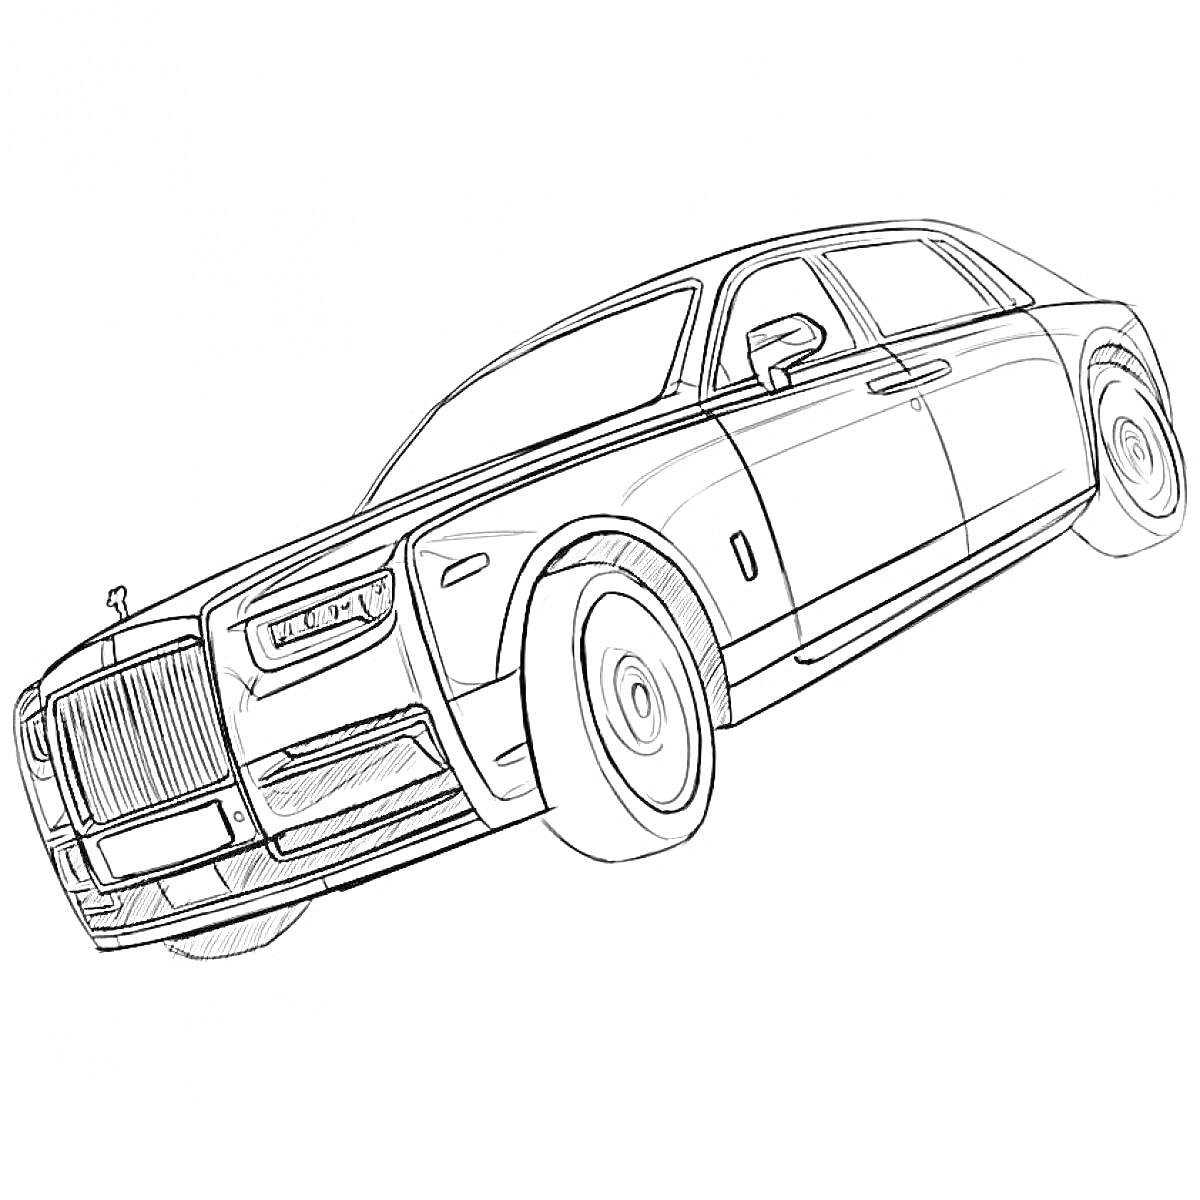 Раскраска Контурное изображение автомобиля Rolls-Royce с деталями кузова, фарами, колесами и фирменным логотипом на капоте.